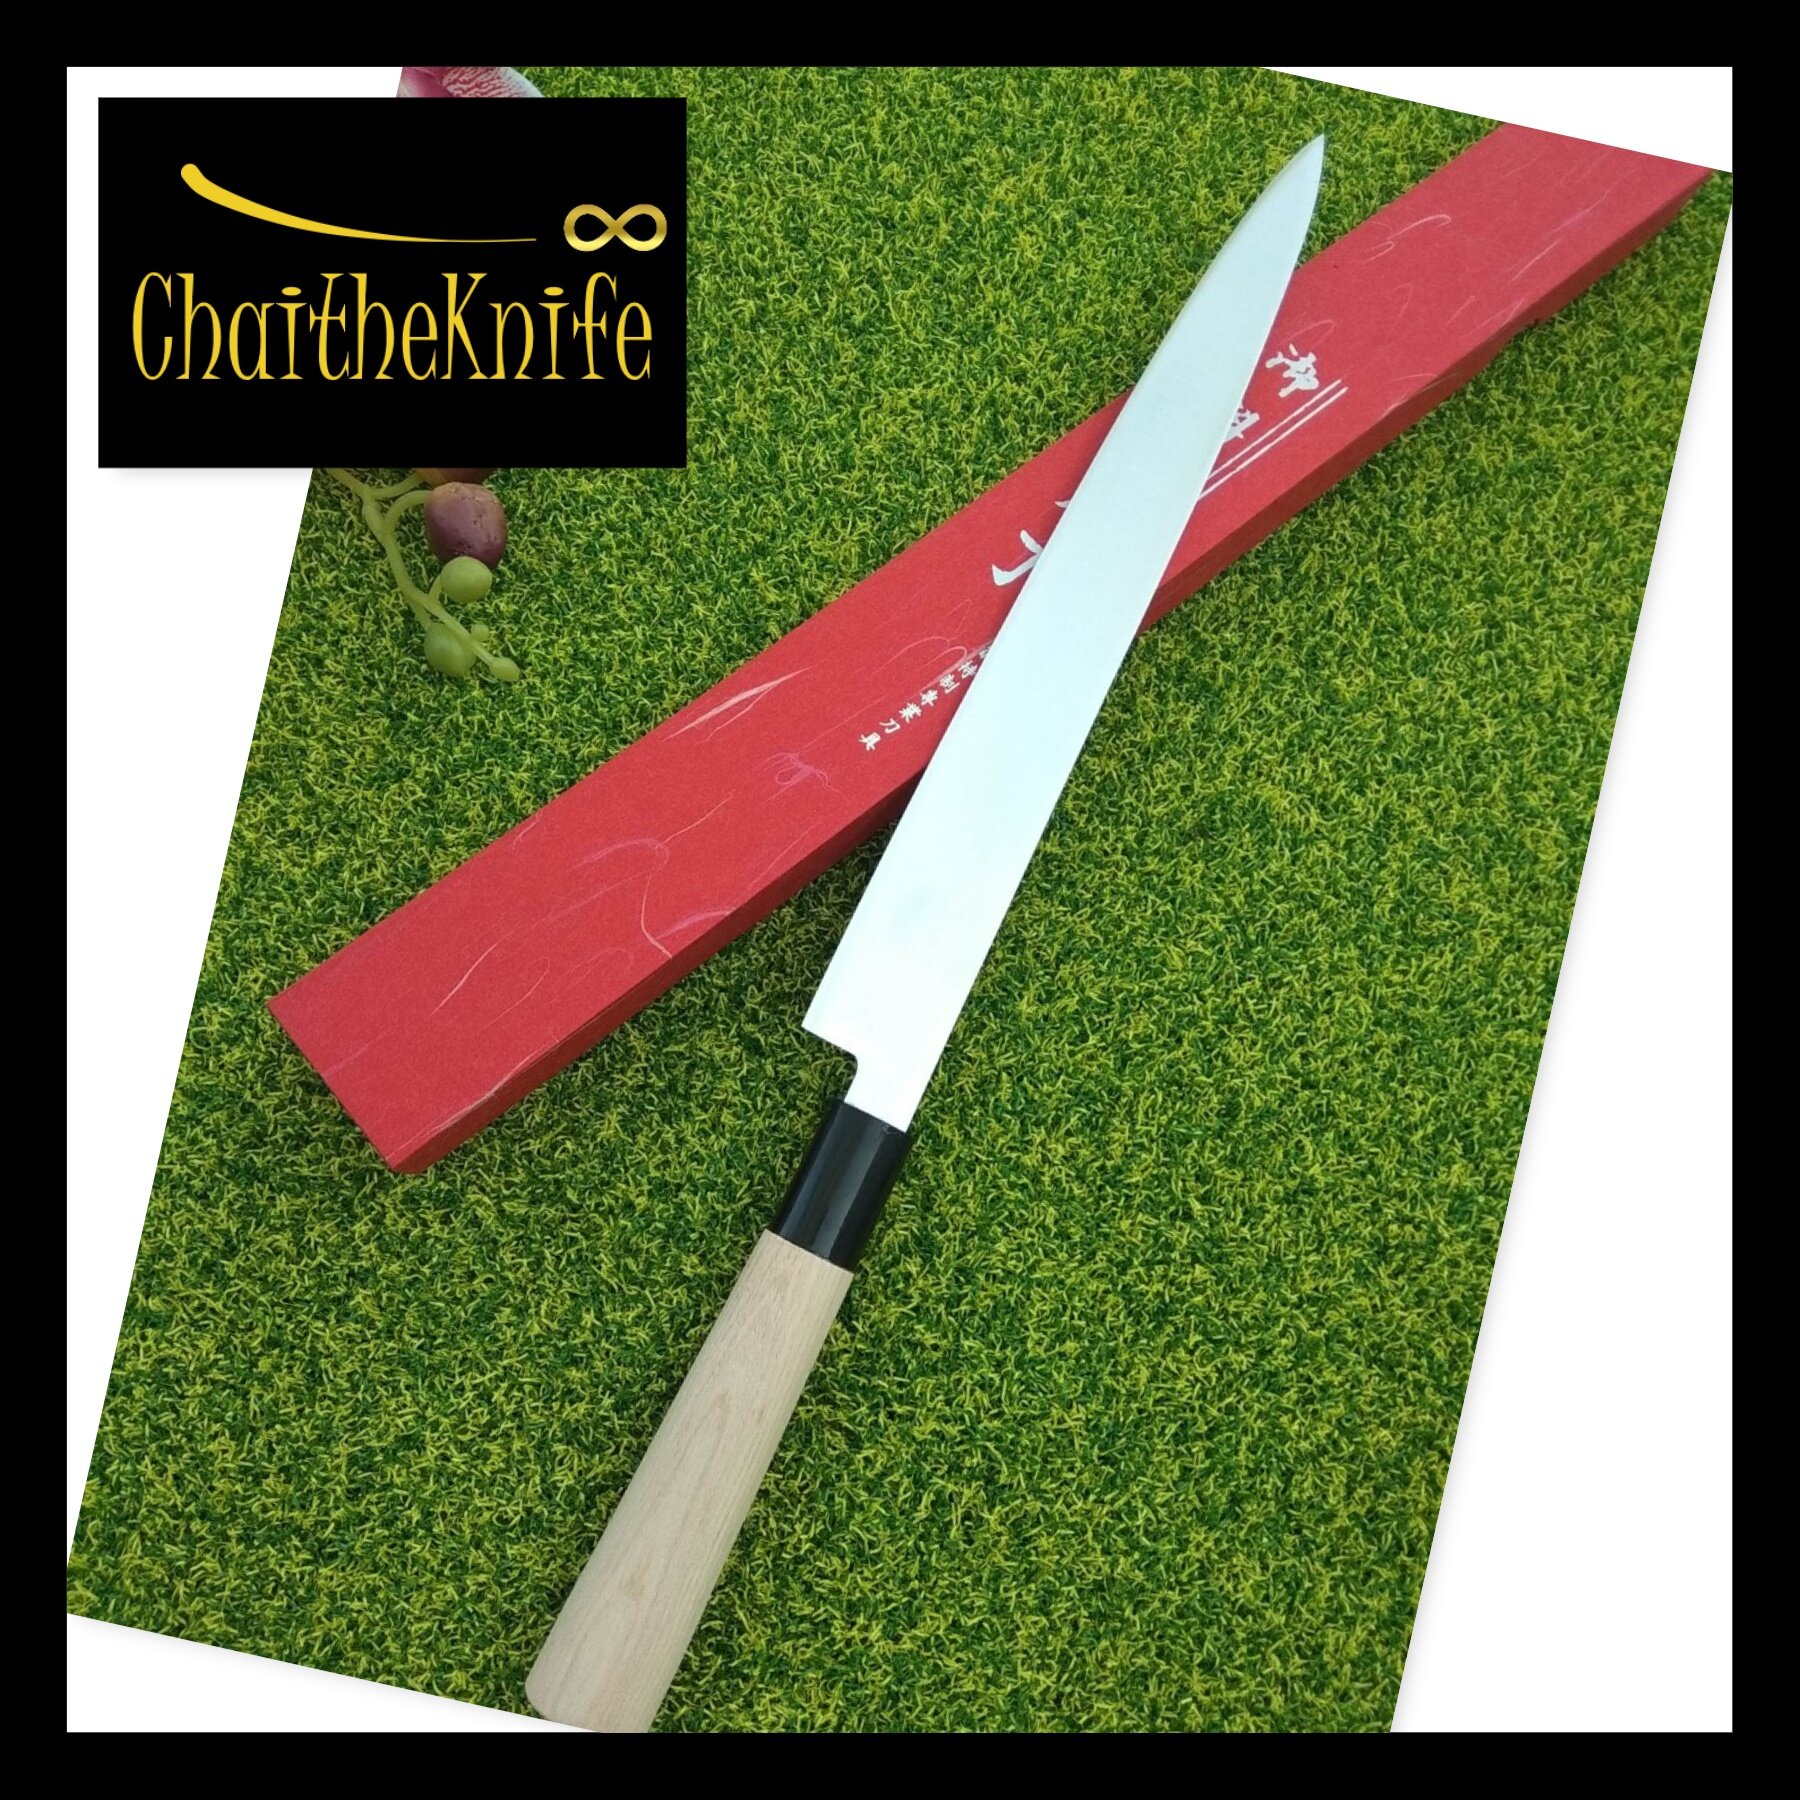 มีดเชฟ ญี่ปุ่น Yanagiba Japanese fish knife  (sushi & sashimi knife) ใบมีดยาว 30 เซ็นติเมตร ด้ามจับไม้ Japanese Yanagiba Fish Knife 30 cm blade long wooden handle